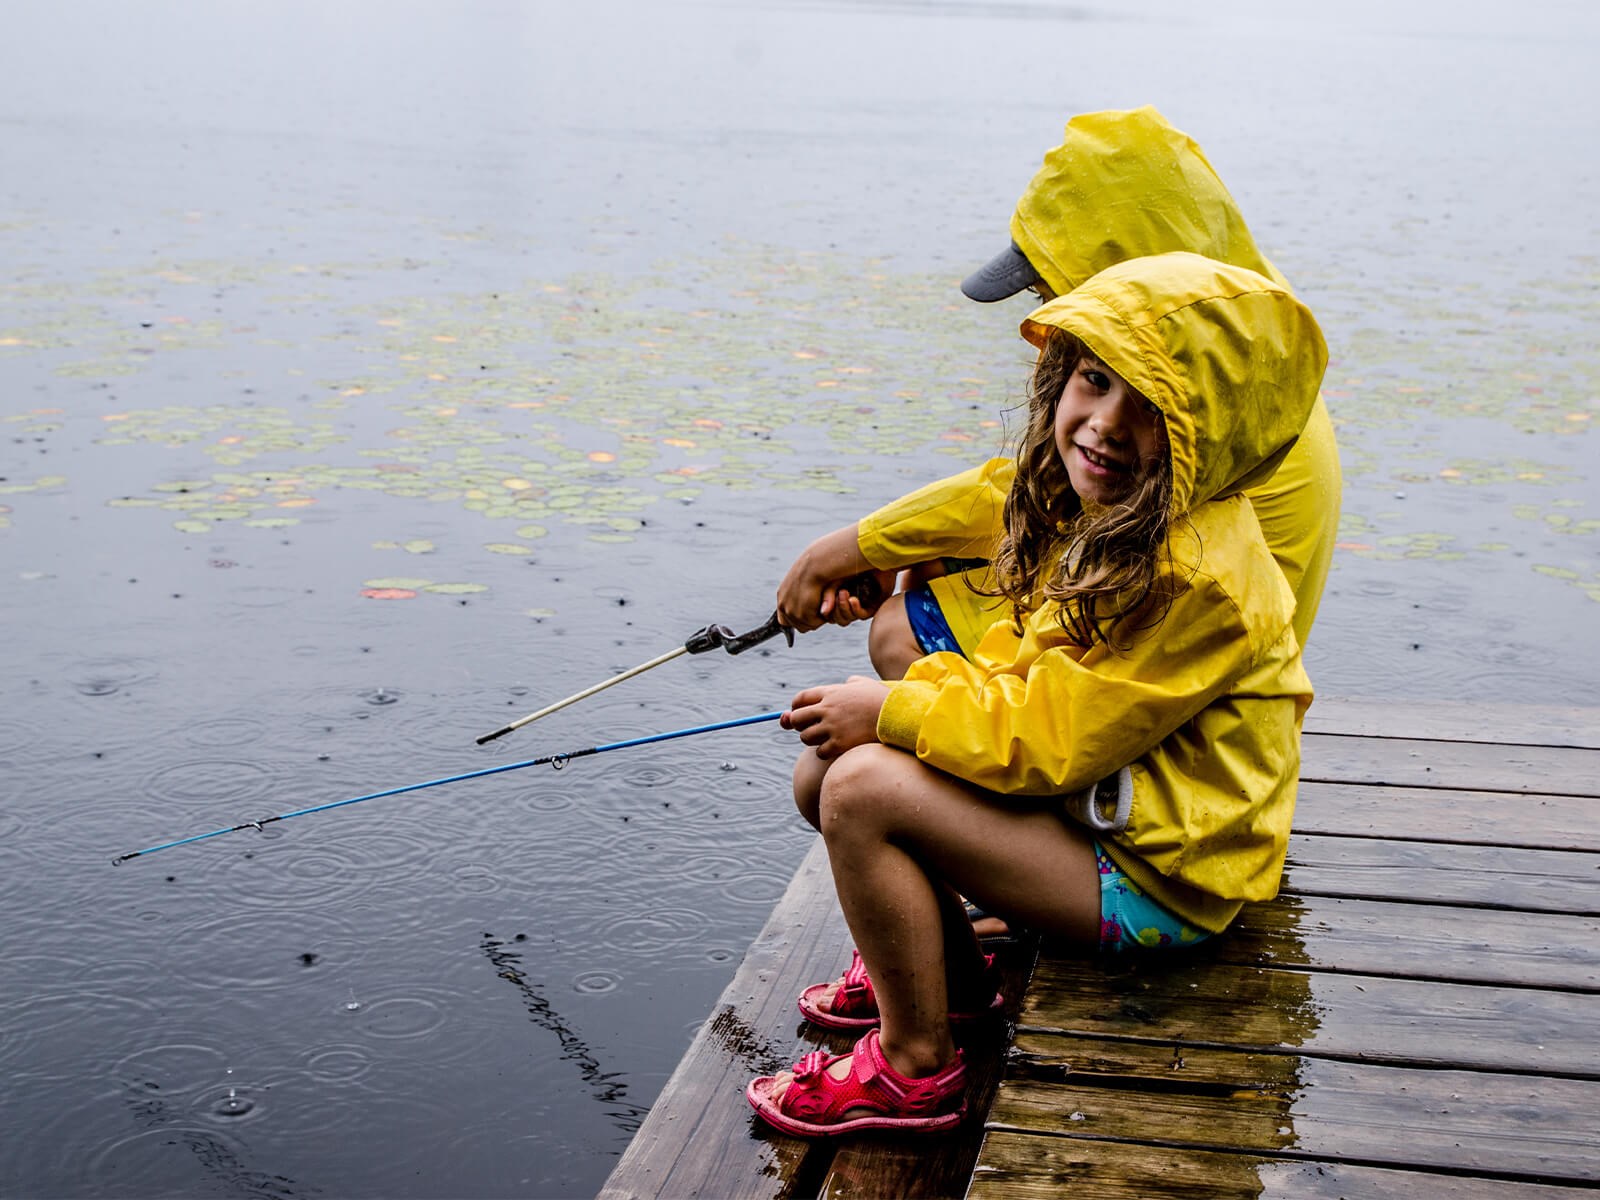 Børn fisker i regnvejr